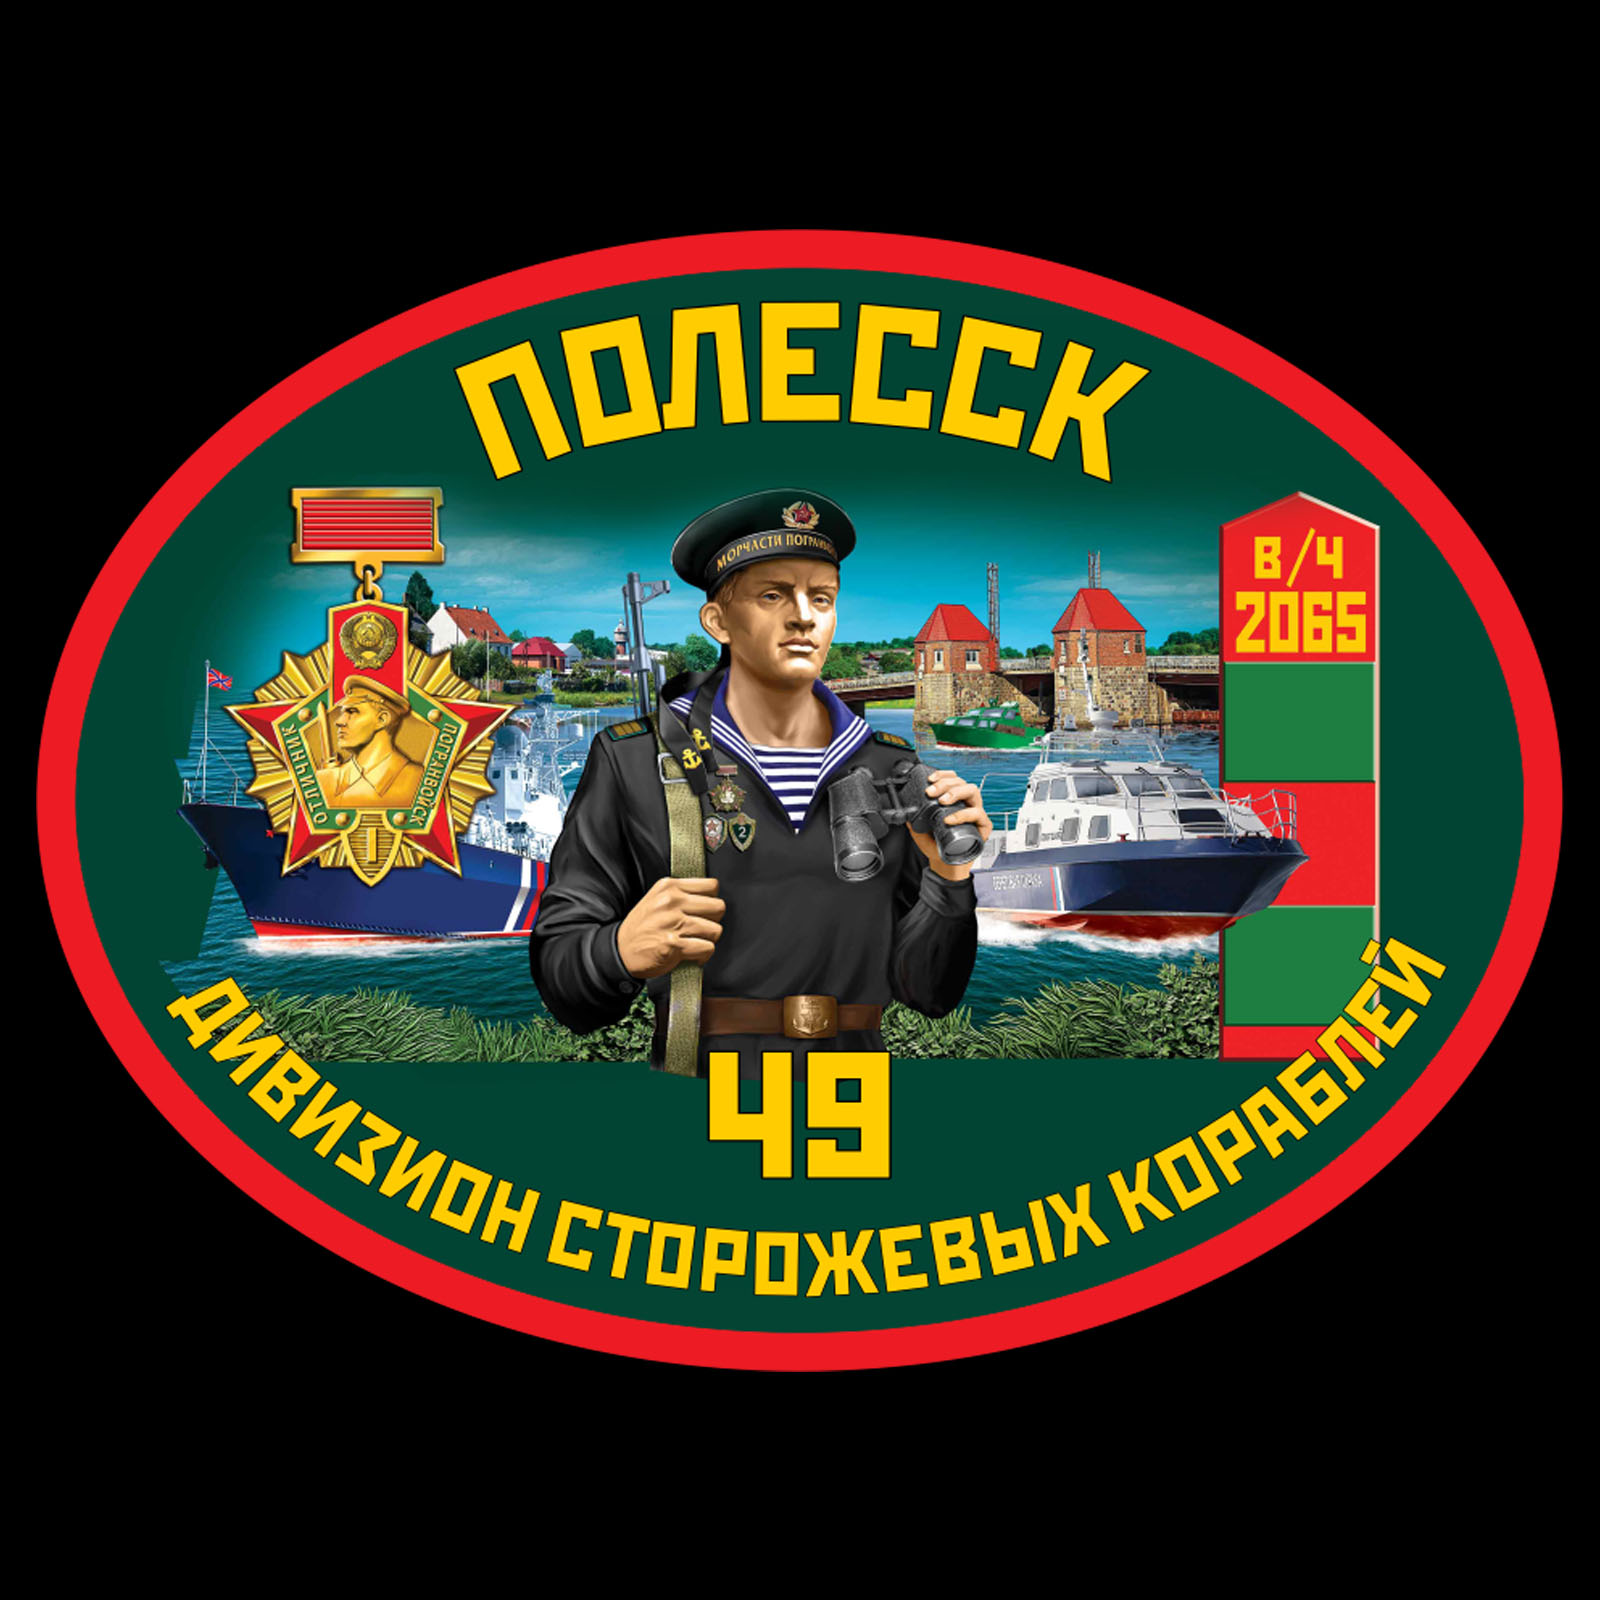 Недорогие термотрансферы 49 дивизион ПСКР Полесск